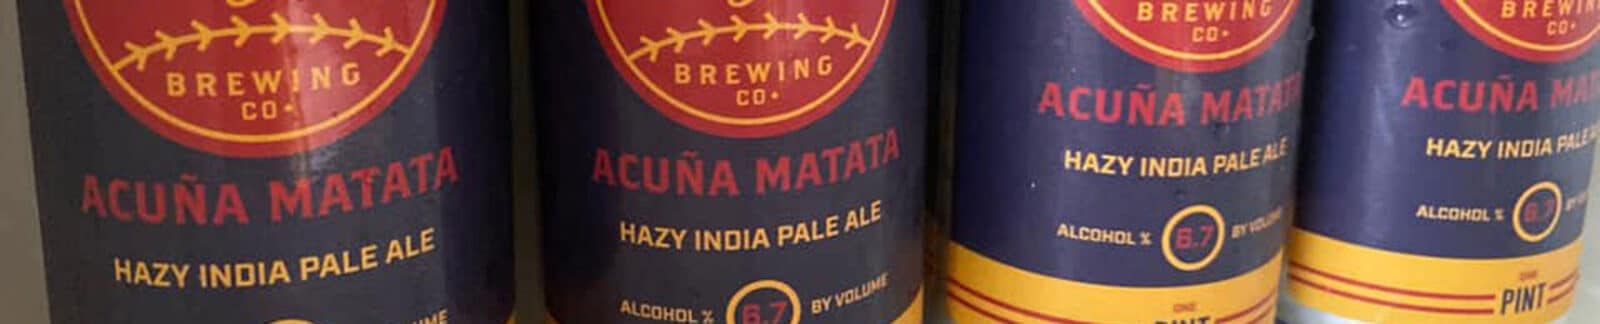 Acuna Matata Beer header